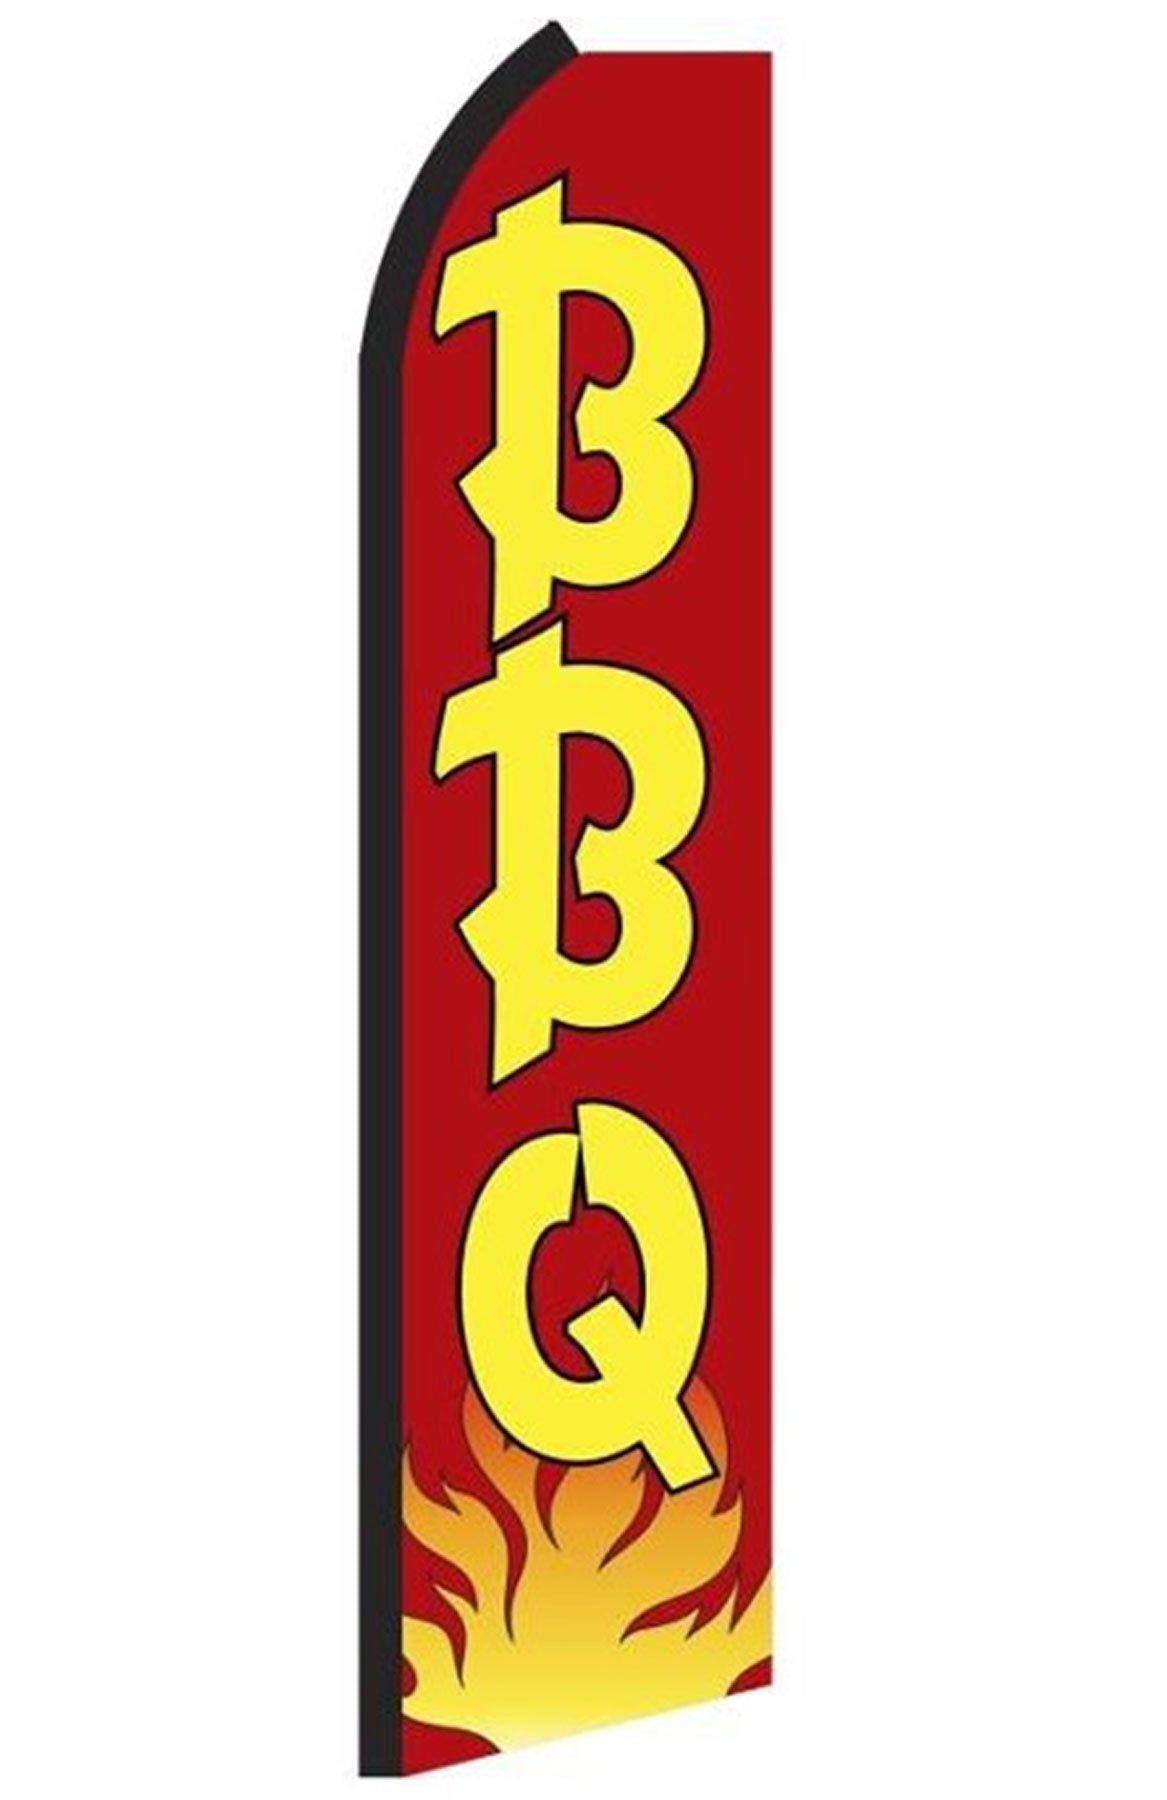 B B Q